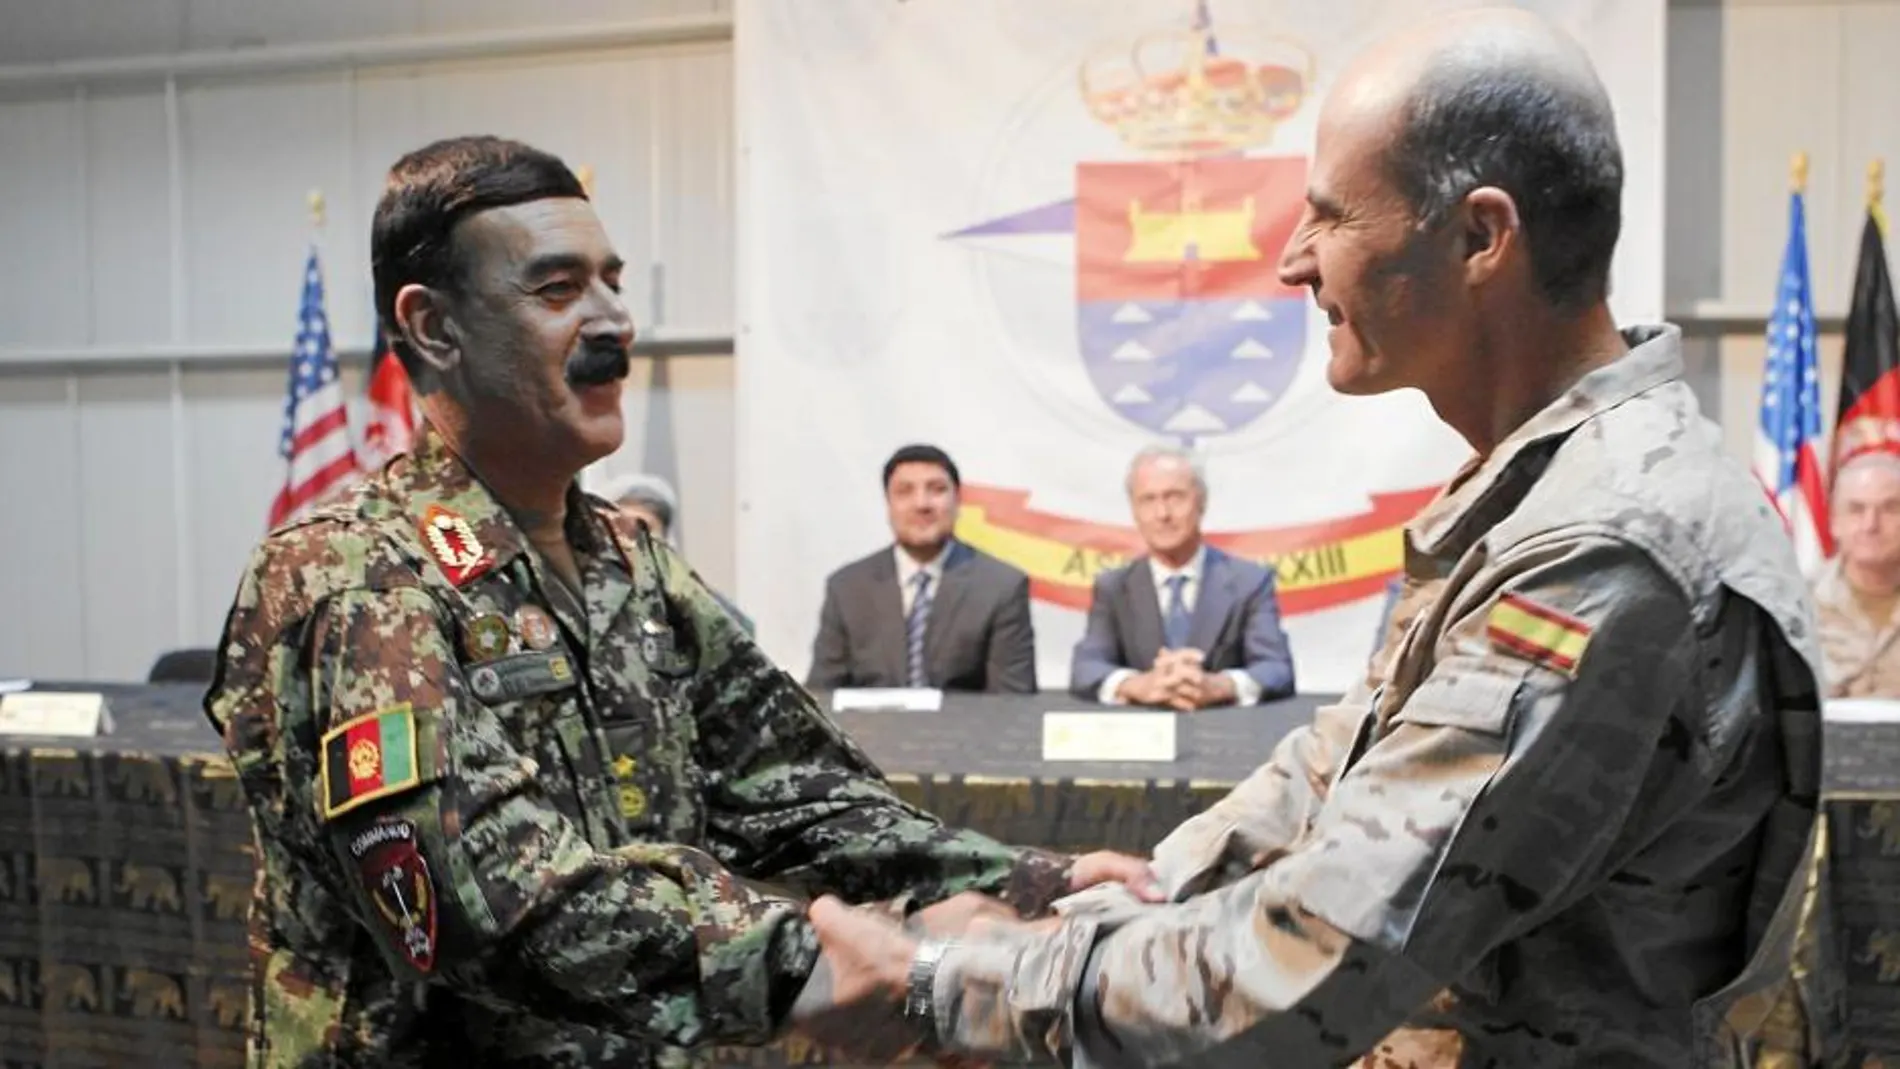 El general Wafadar saluda al coronel José Luis Murga, último jefe de la base de Qala i Naw, el día de su traspaso